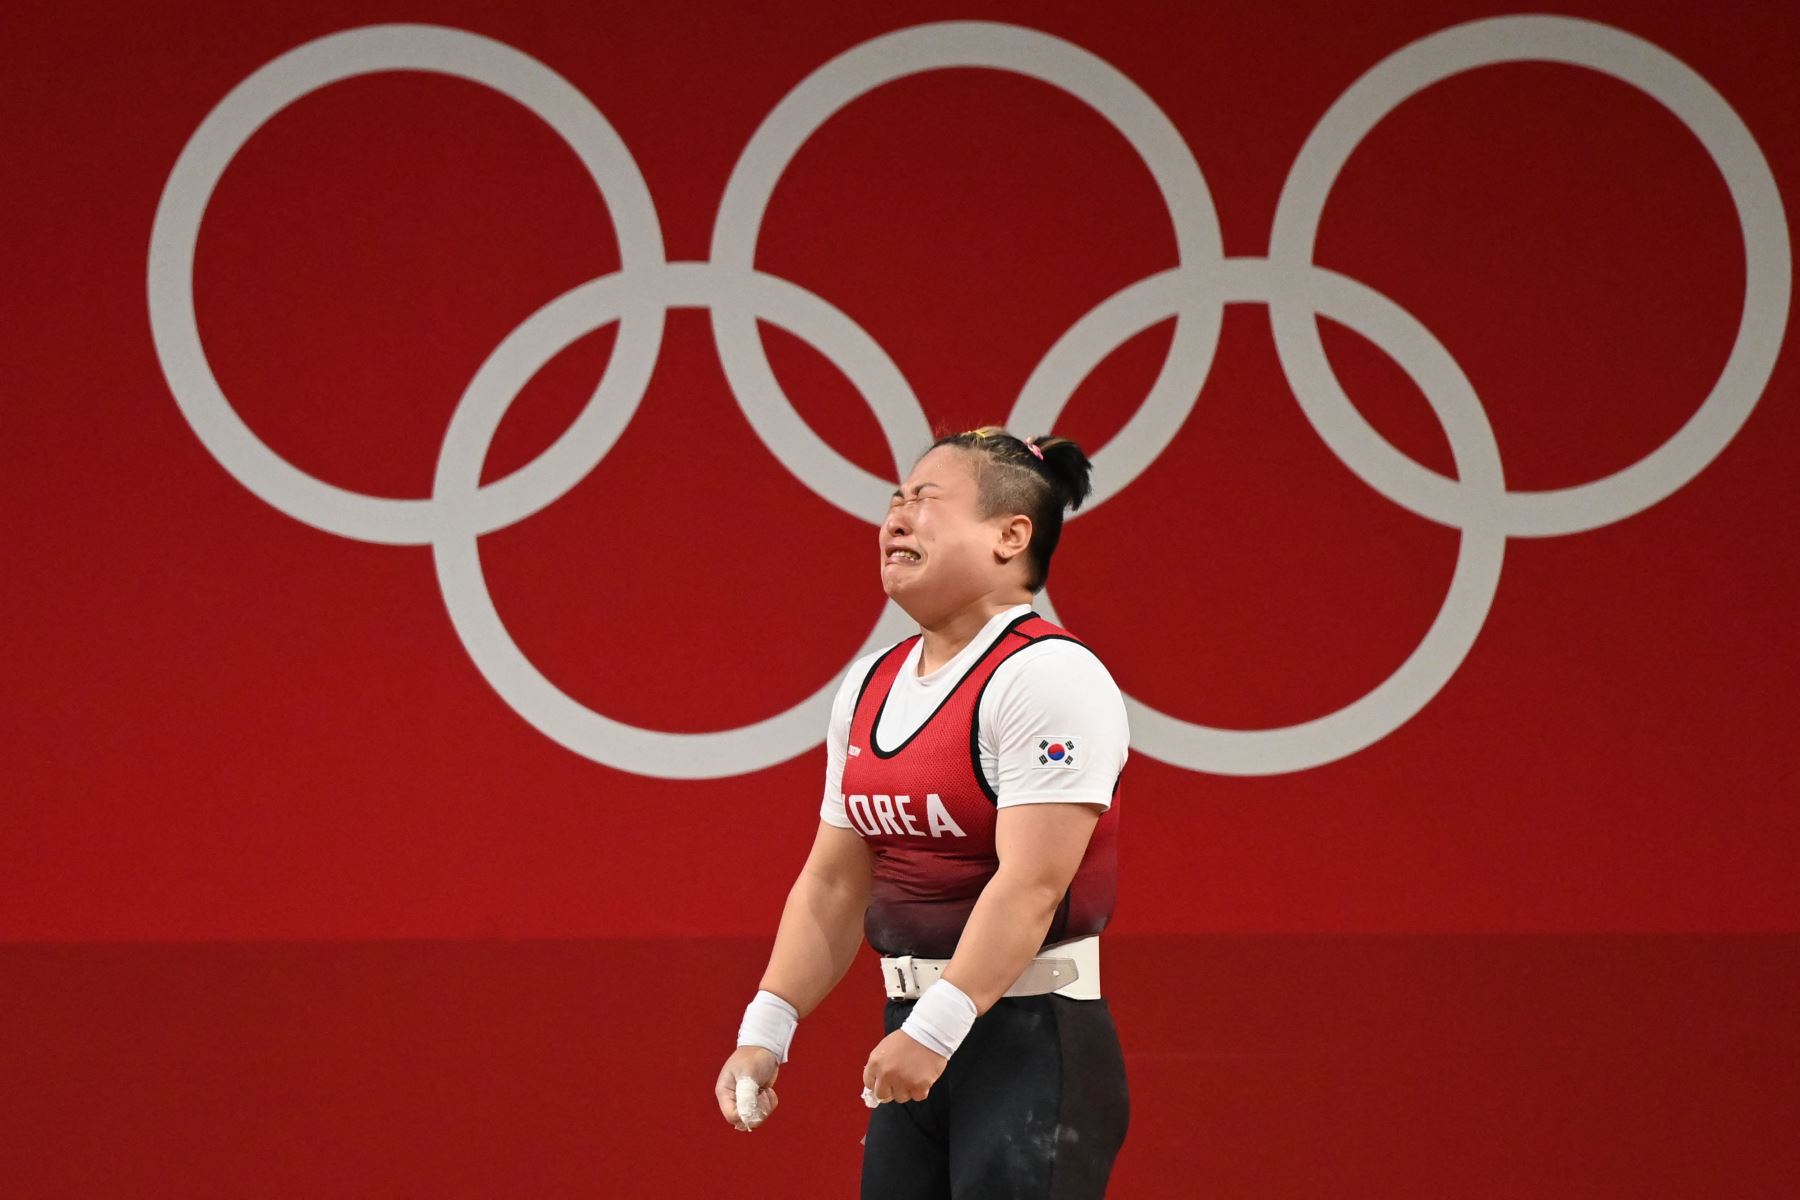 Kim Su-hyeon de Corea del Sur reacciona mientras compite en la competencia de halterofilia femenina de 76 kg durante los Juegos Olímpicos de Tokio 2020 en el Foro Internacional de Tokio.
Foto: AFP